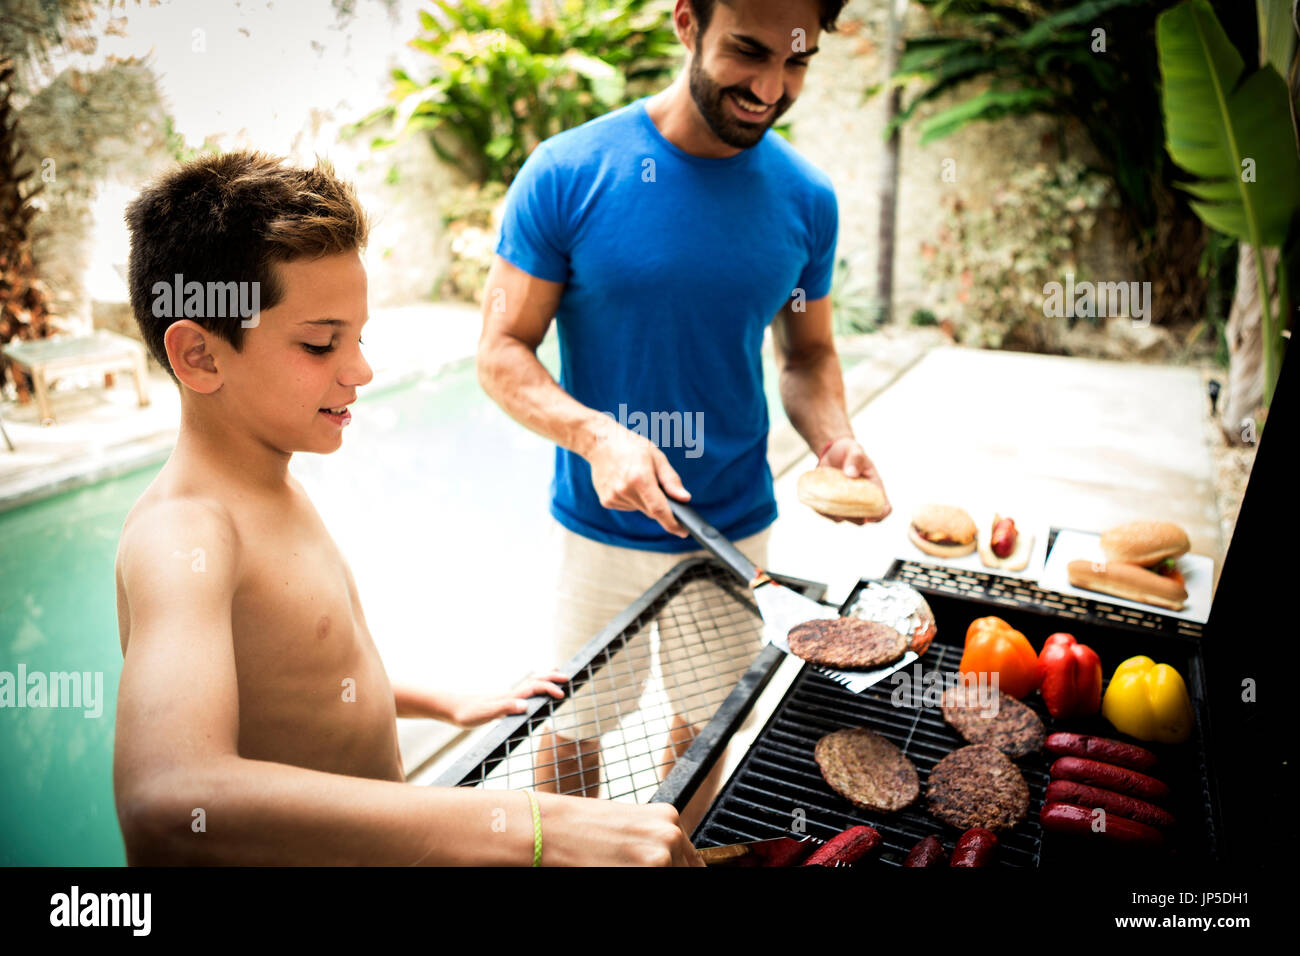 Un uomo e il ragazzo accanto a un barbecue per la cottura del cibo. Foto Stock